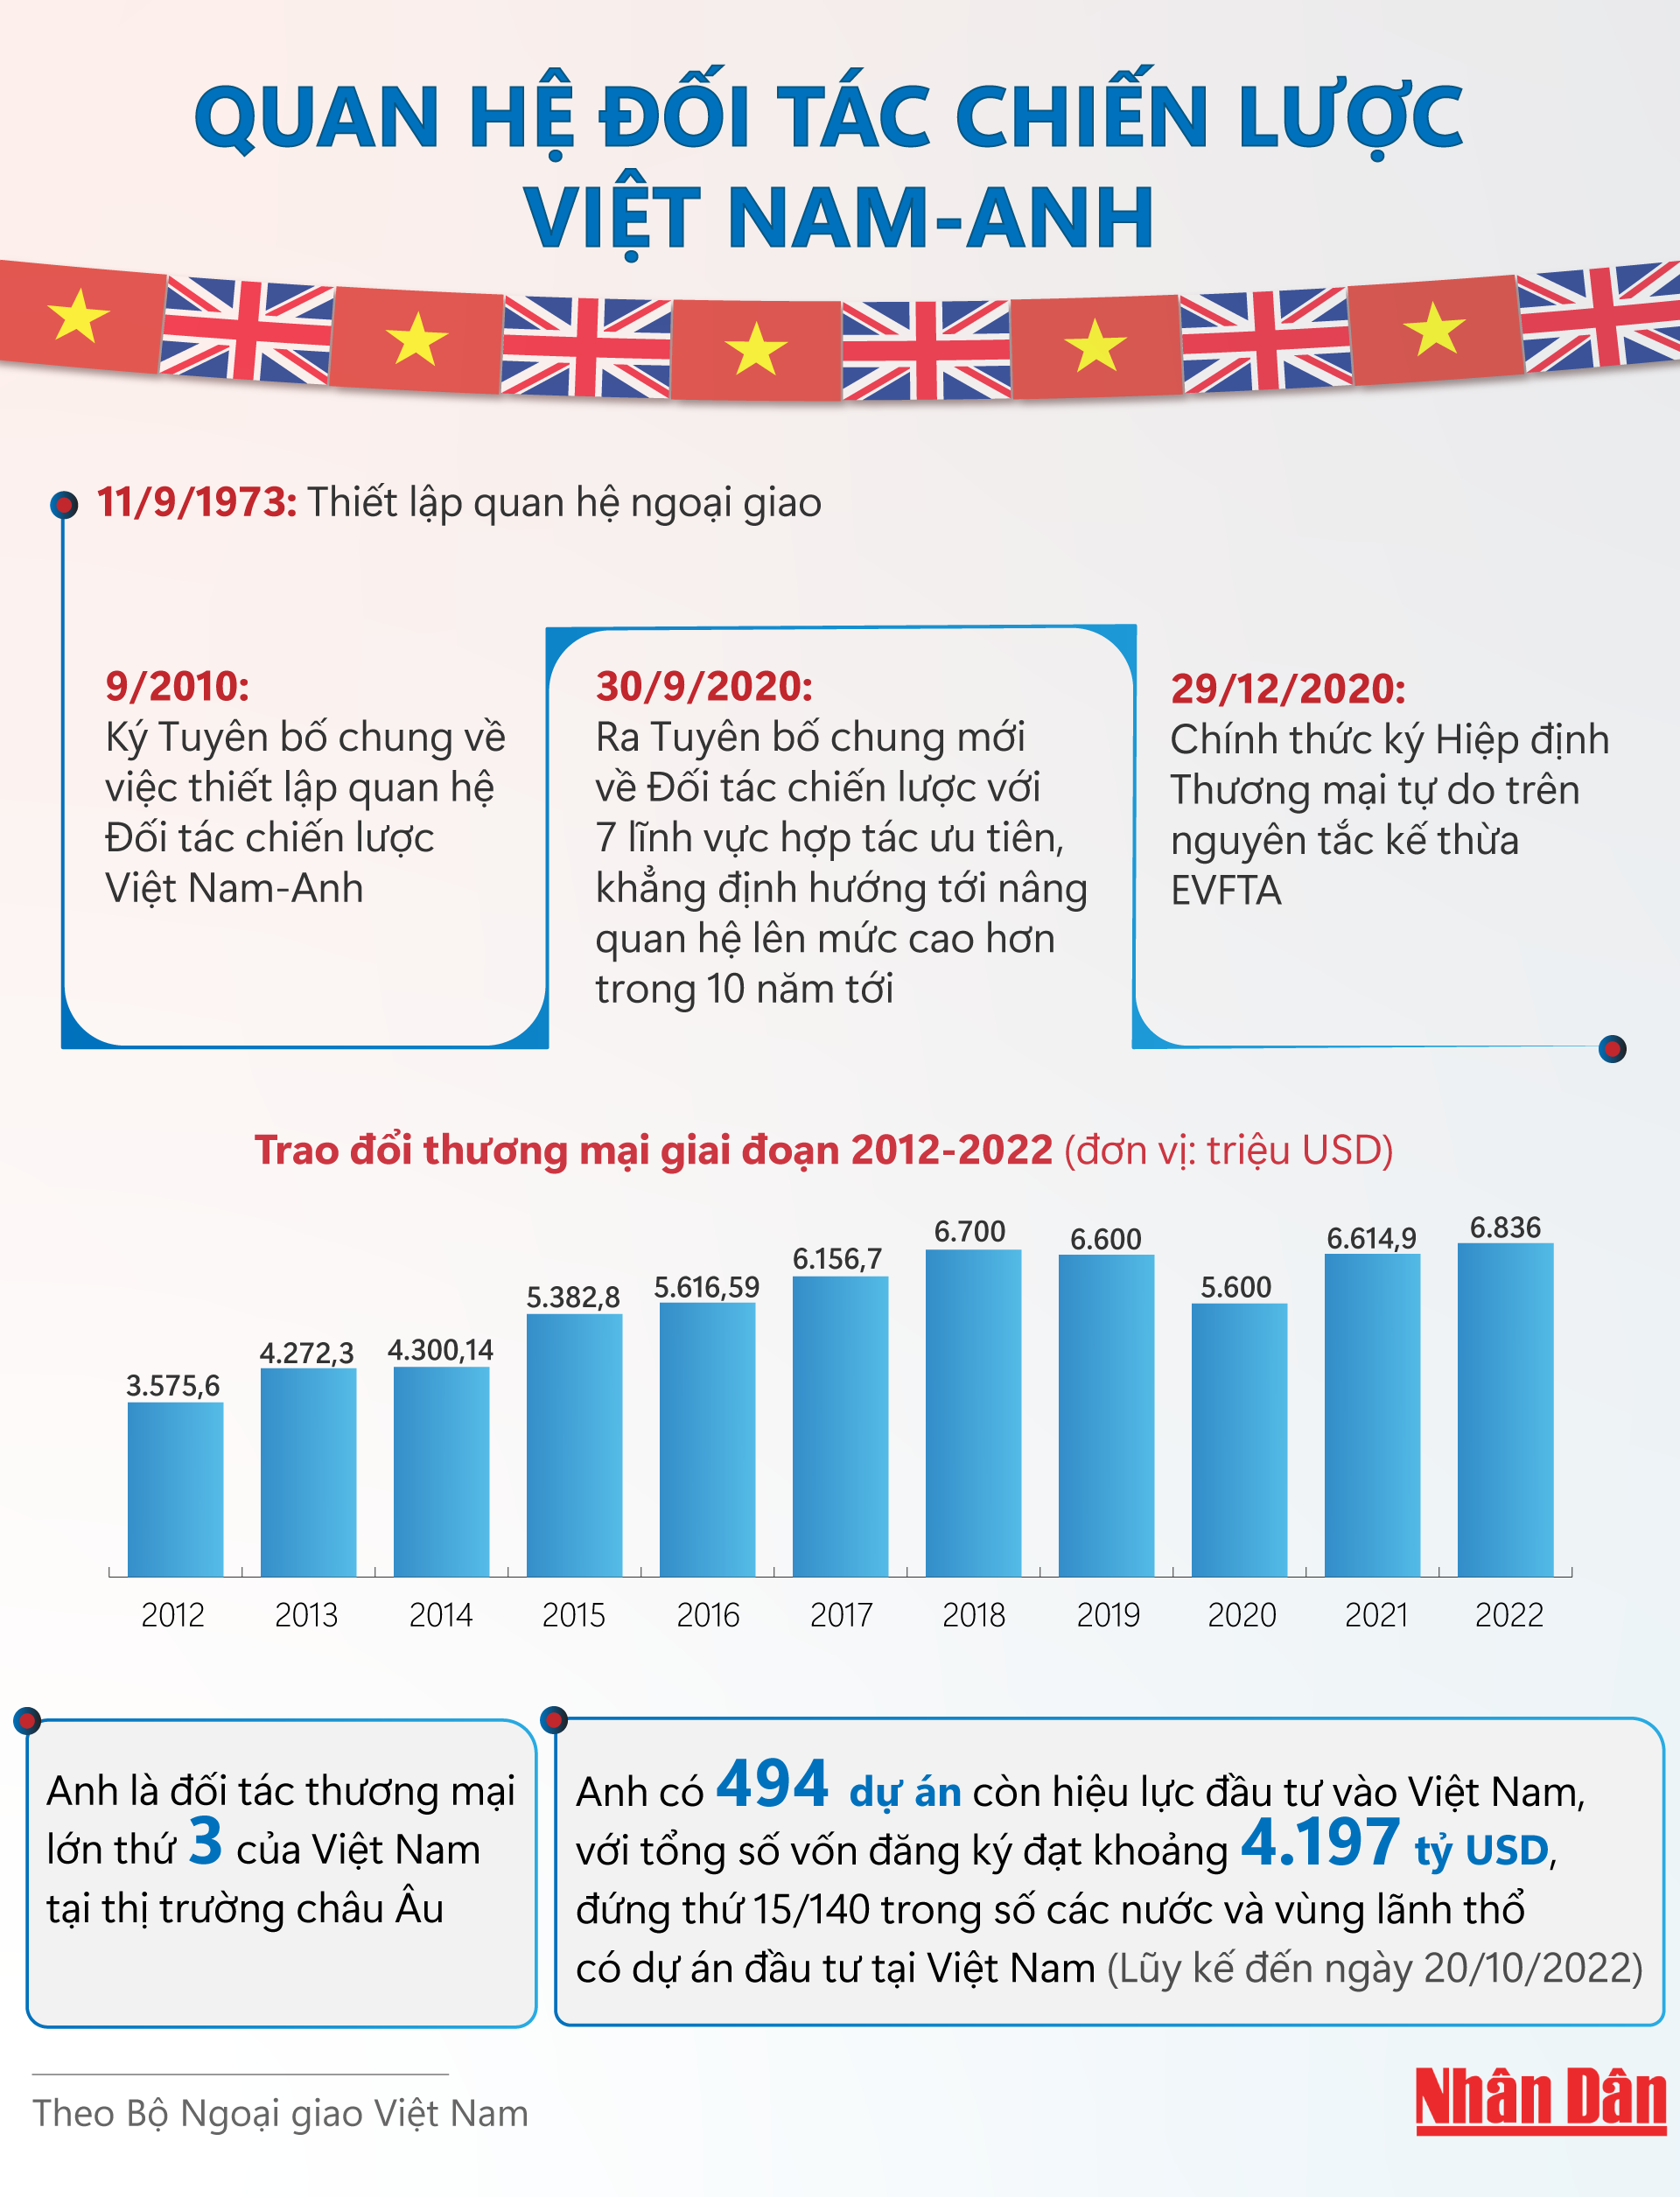 [Infographic] Quan hệ Đối tác chiến lược Việt Nam-Anh ảnh 1